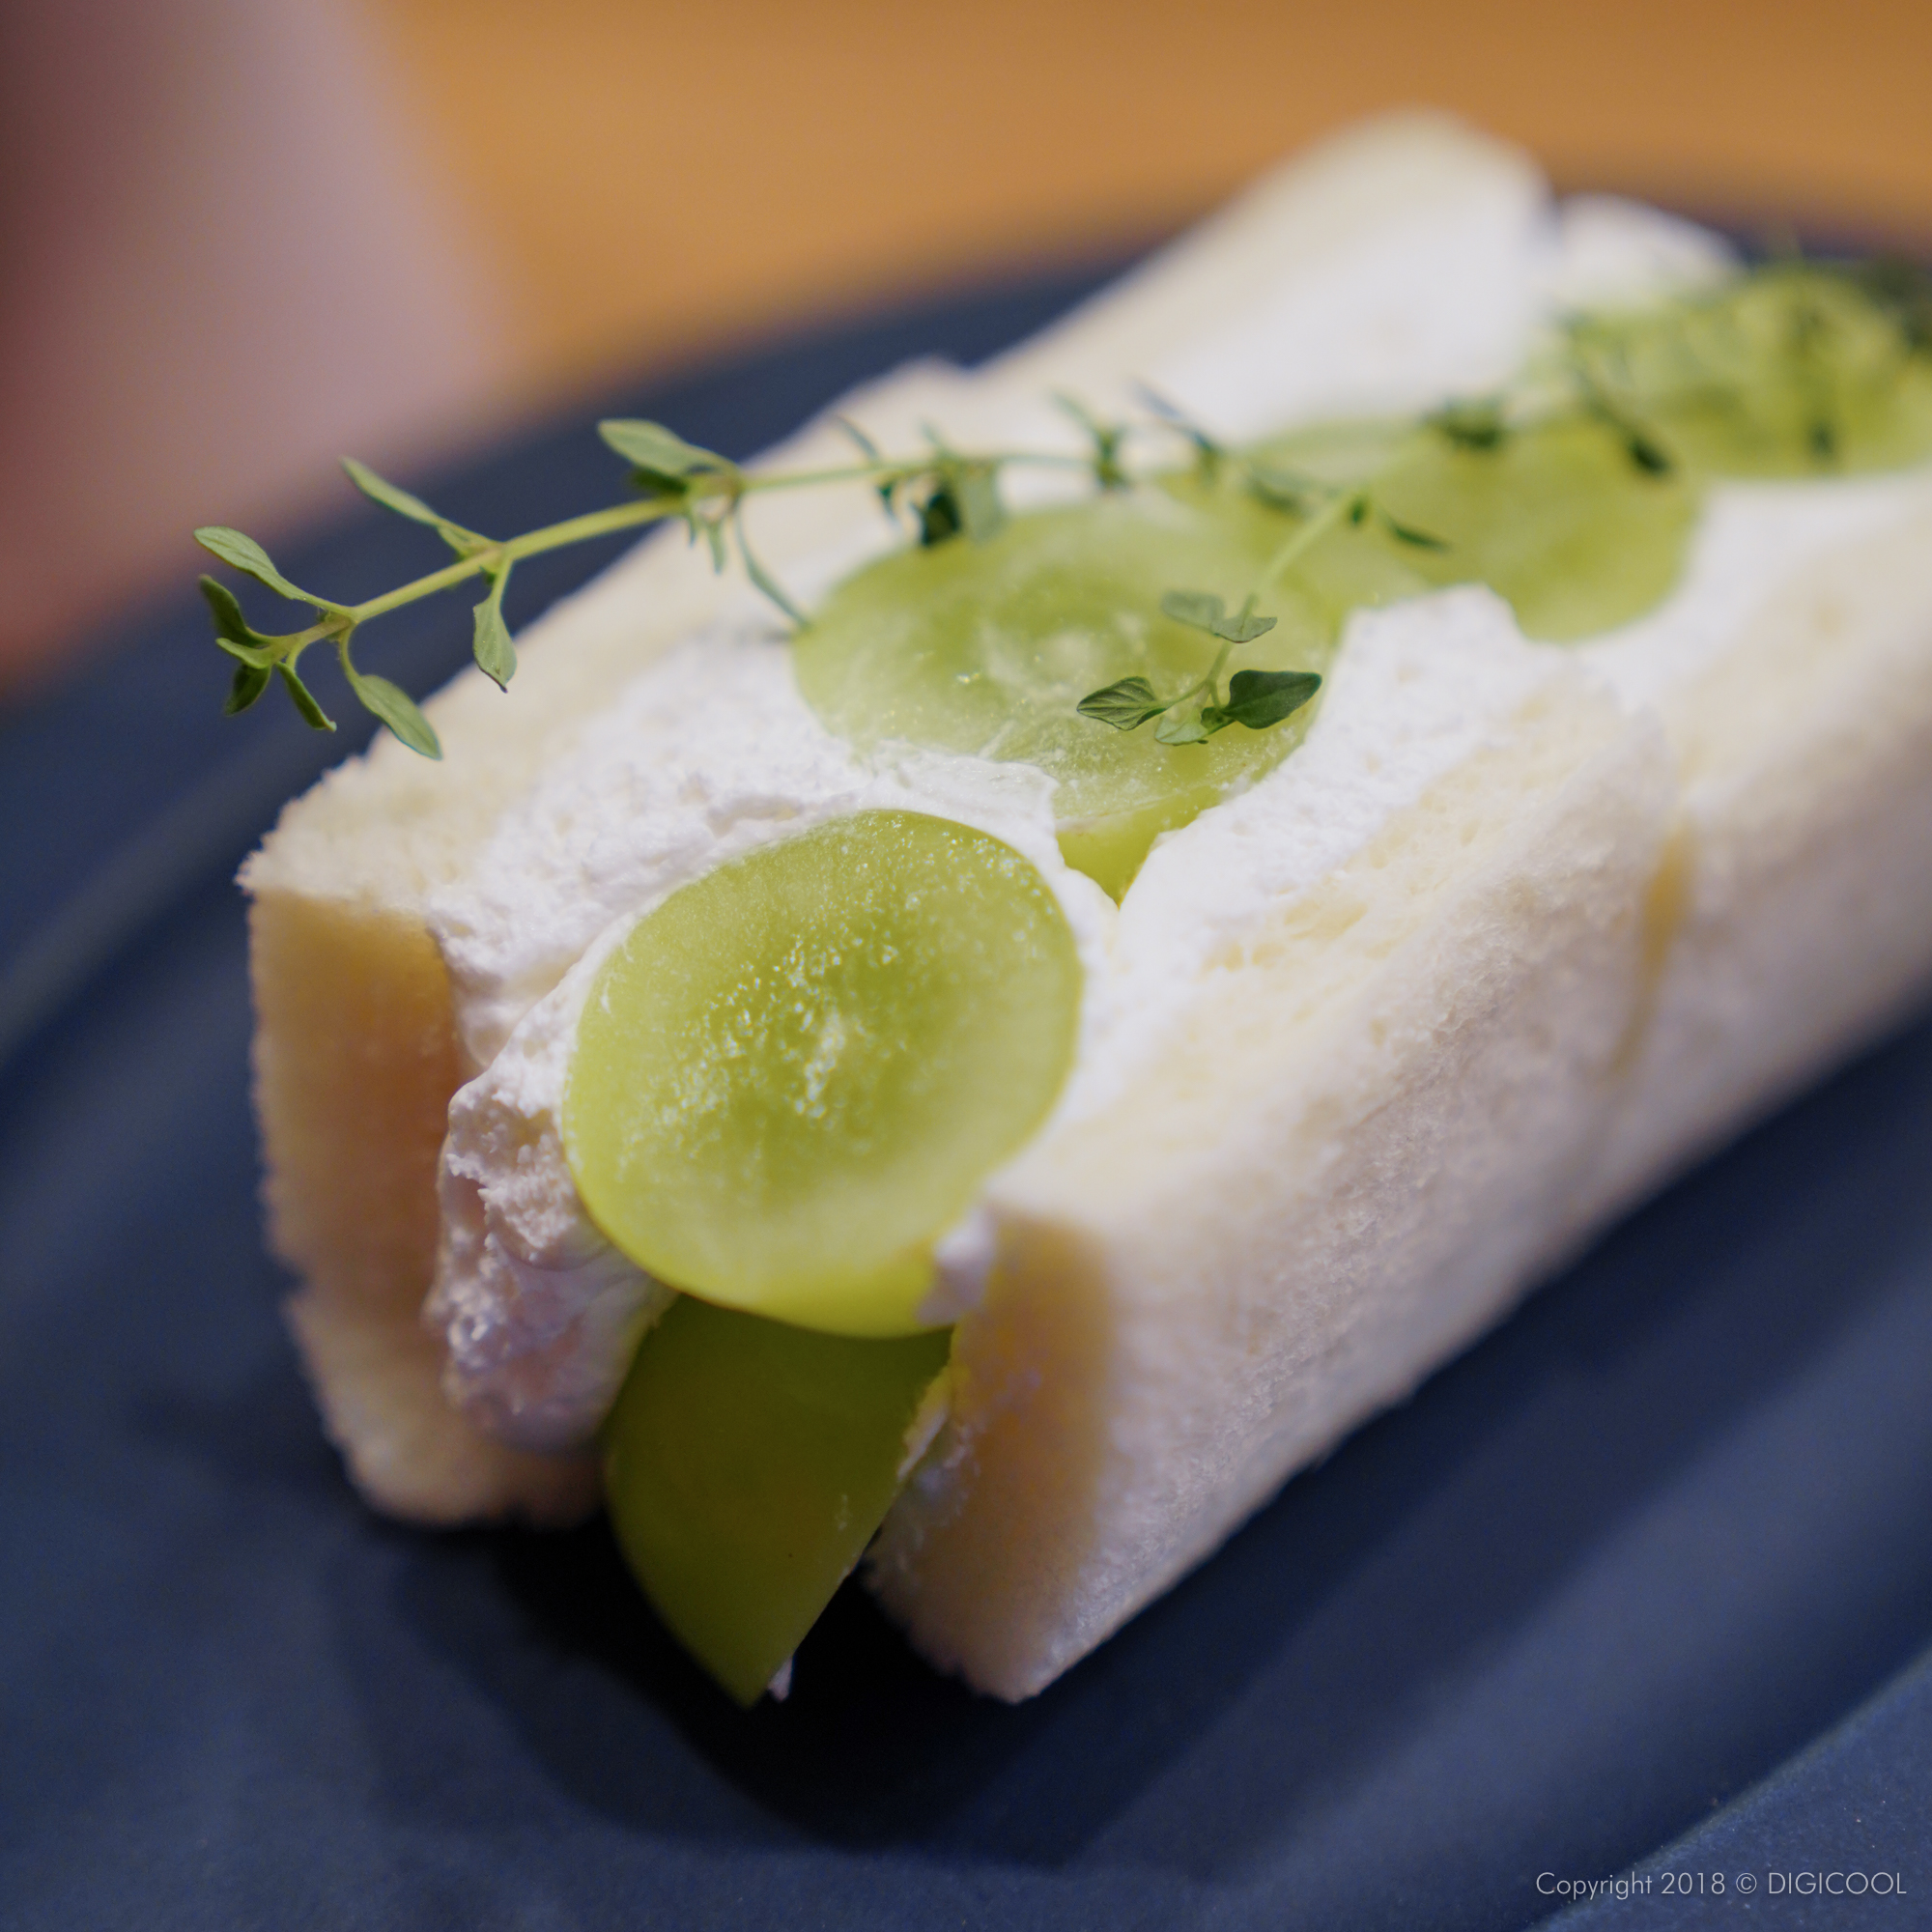 大阪府柏原市・八百屋の嫁が作る旬のフルーツサンドが食べられる「momovege」に行ってきました。